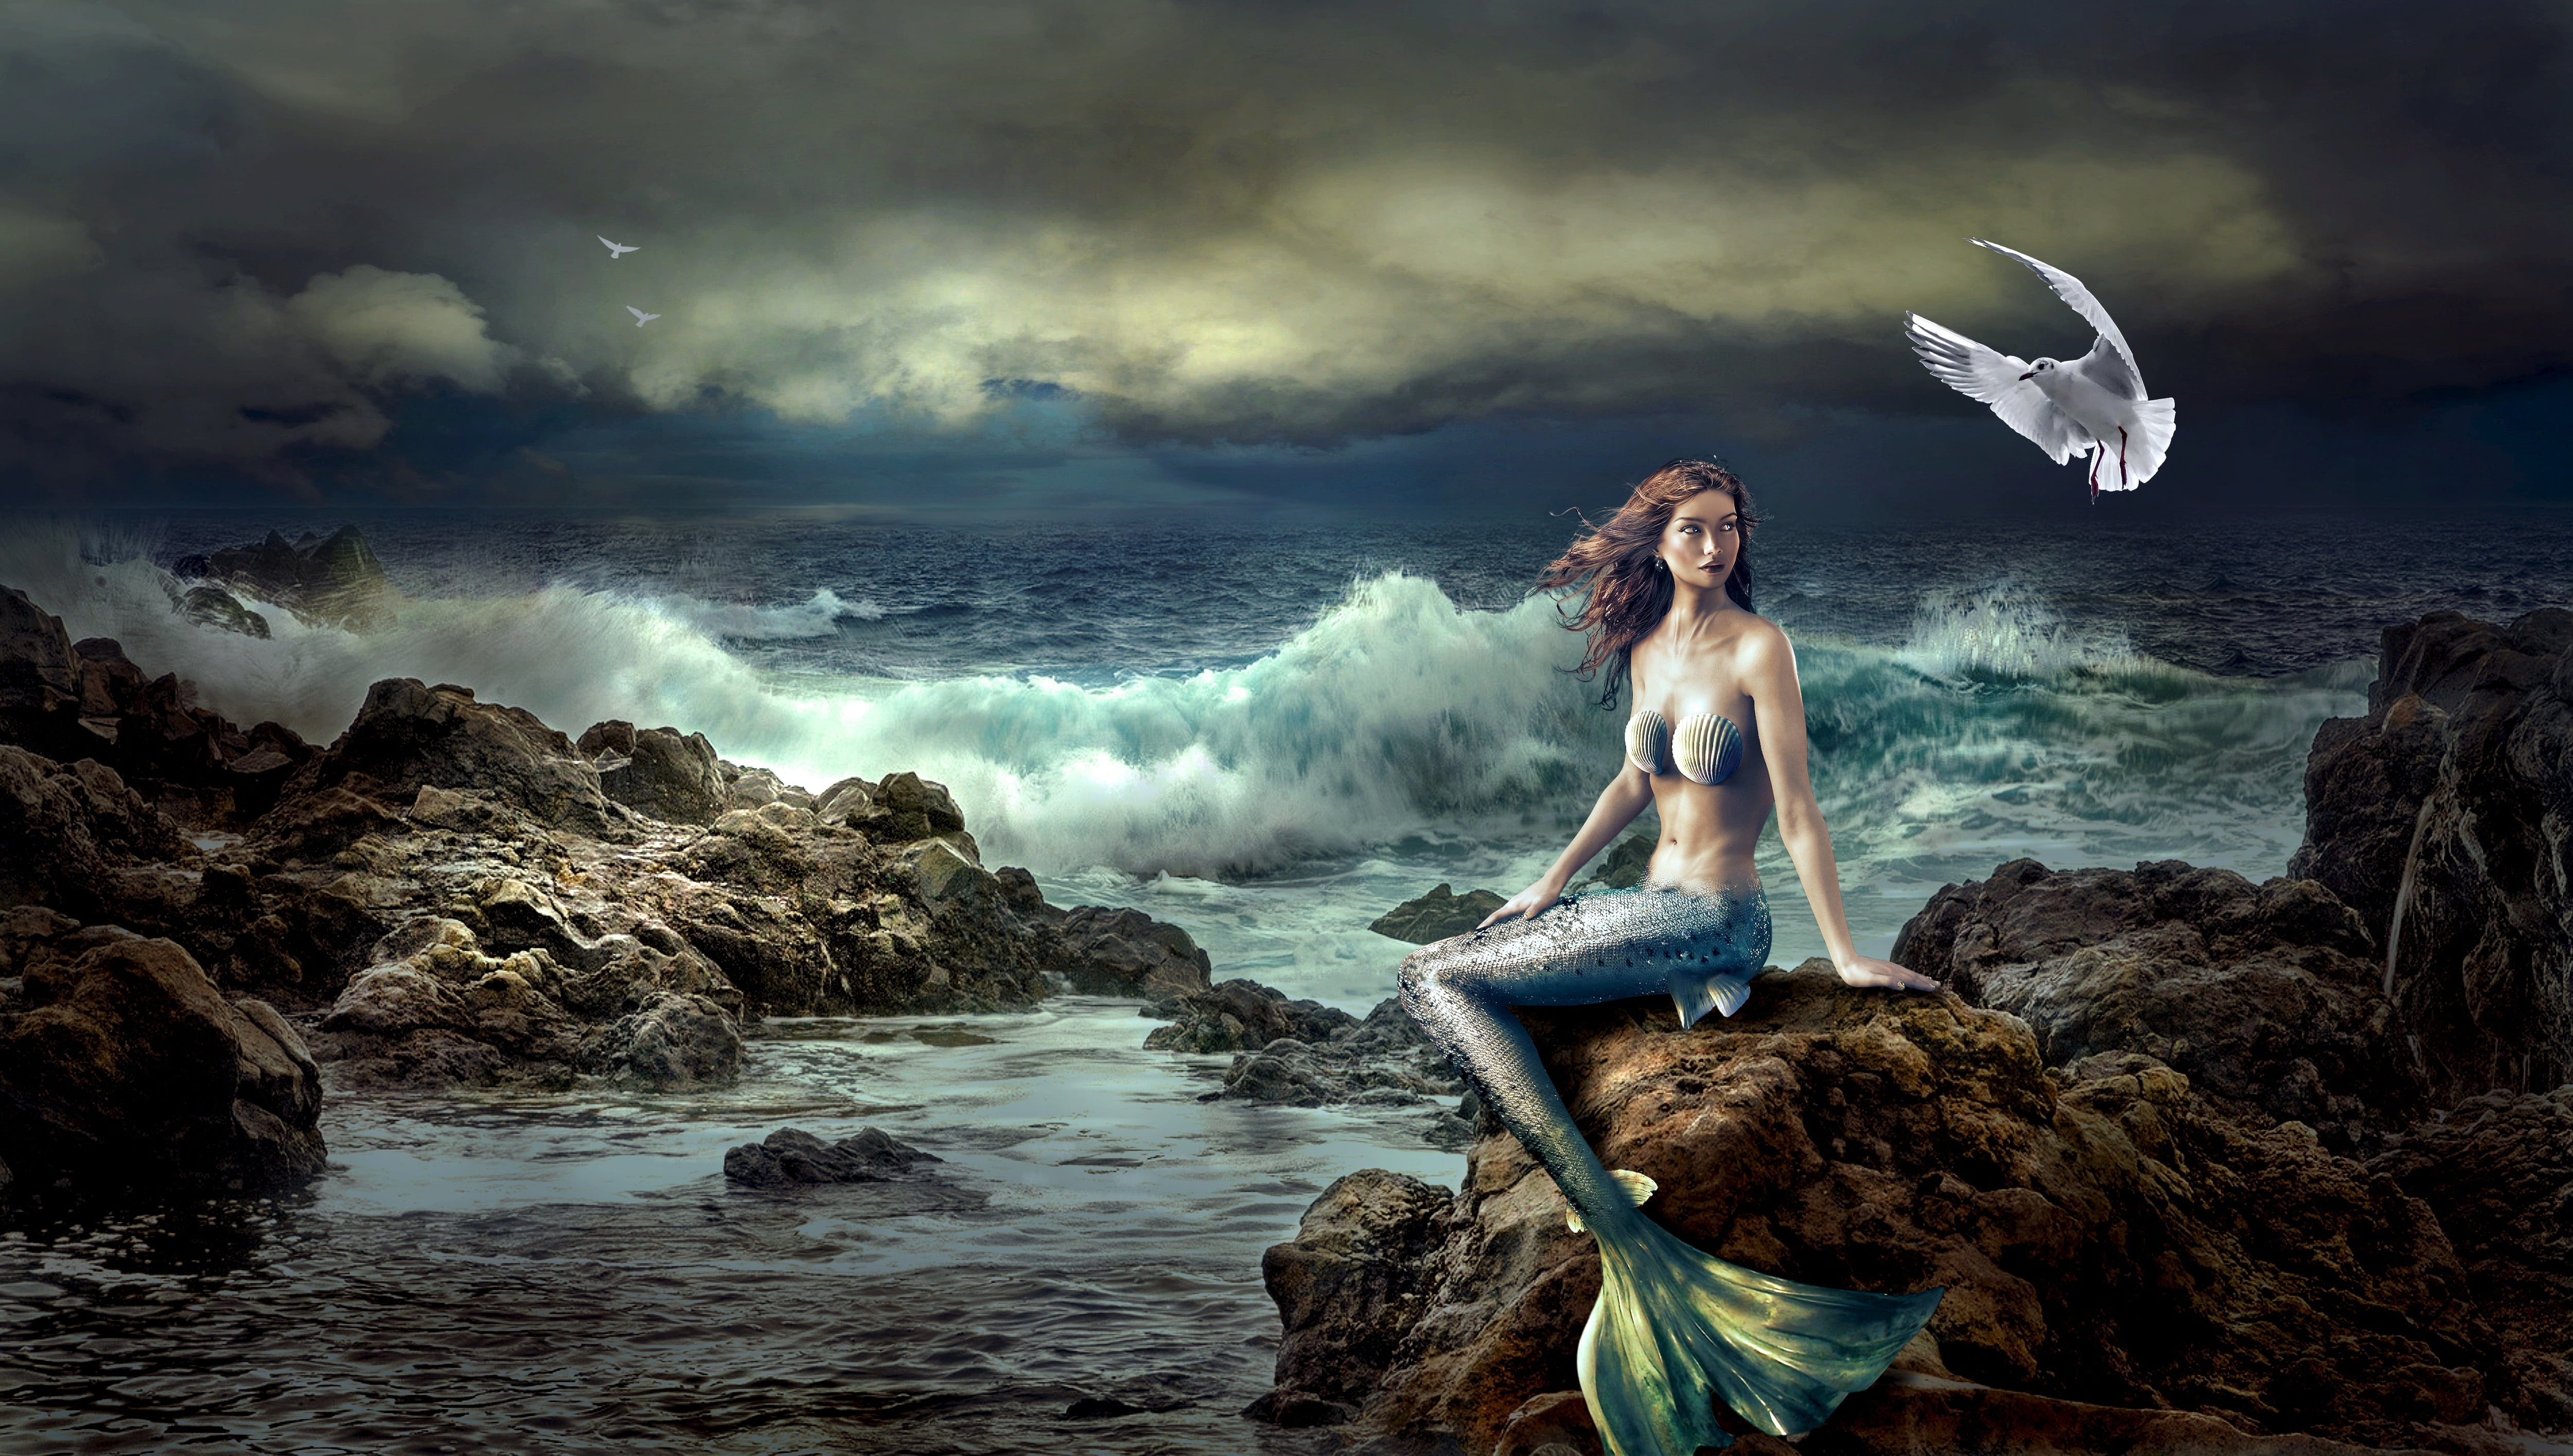 painting of mermaid sitting on rock